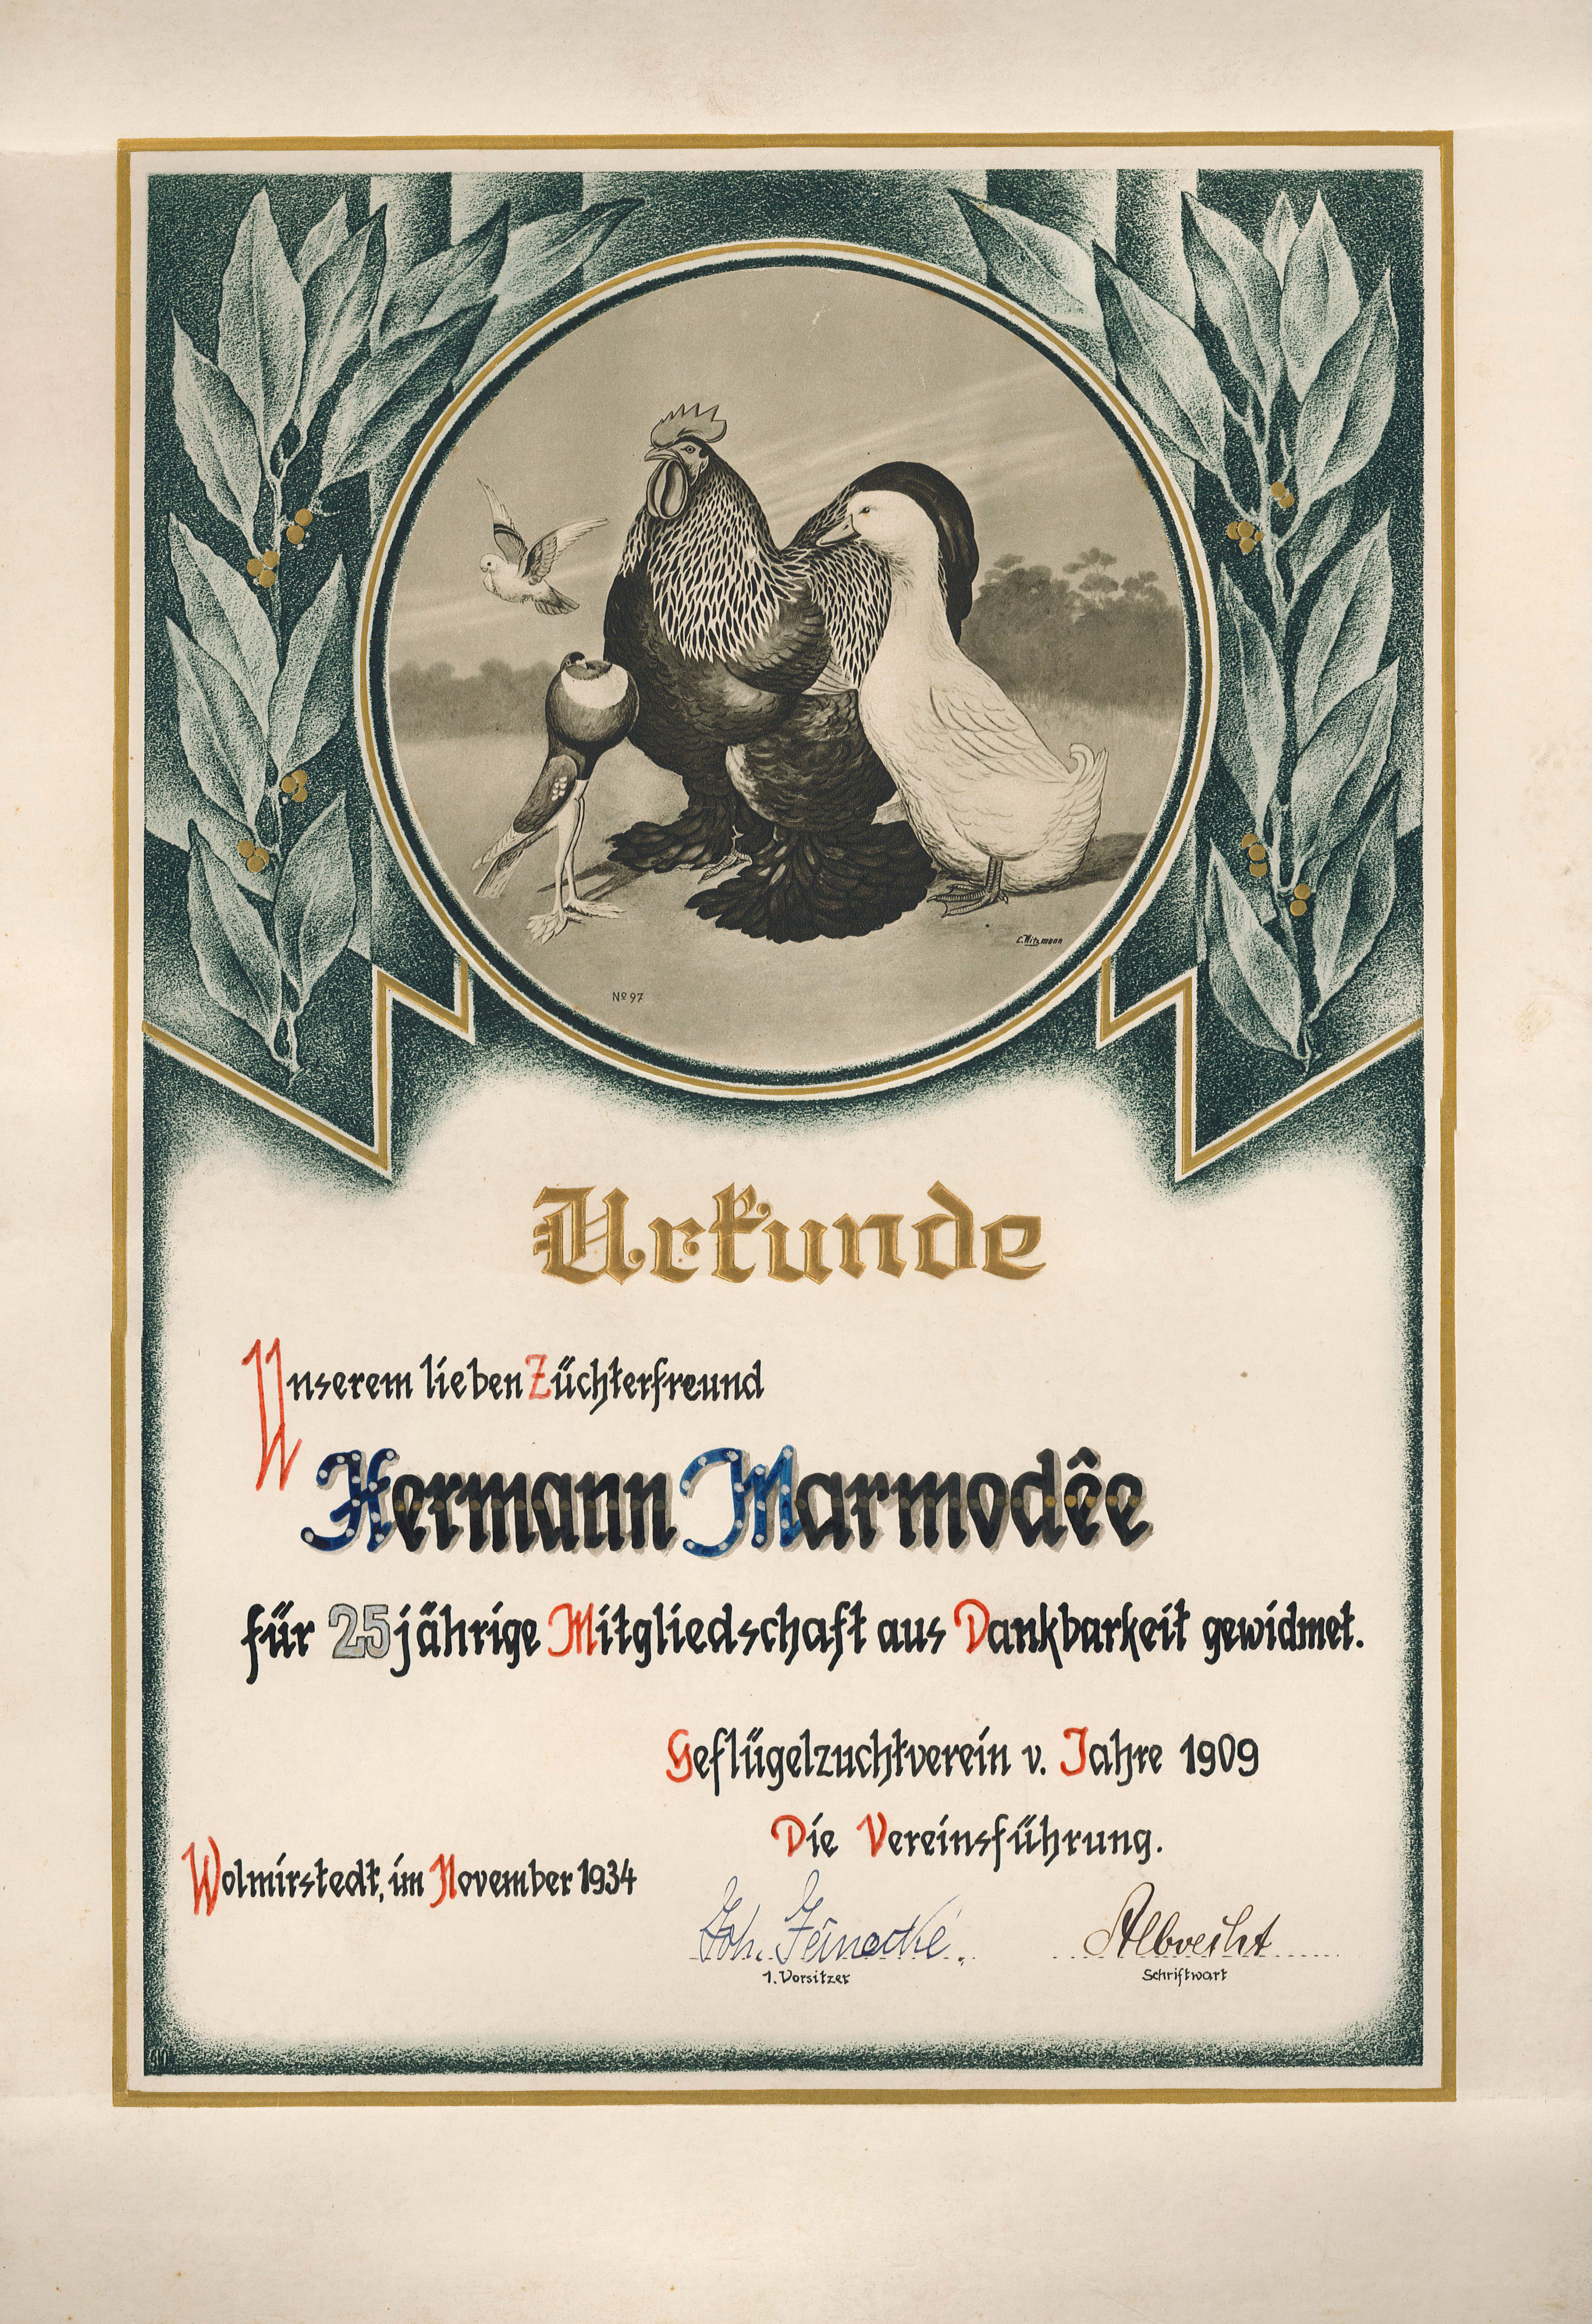 Urkunde zur 25-jährigen Mitgliedschaft des Herman Marmodee im Geflügelzuchtverein Wolmirstedt, 1934 (Museum Wolmirstedt RR-F)